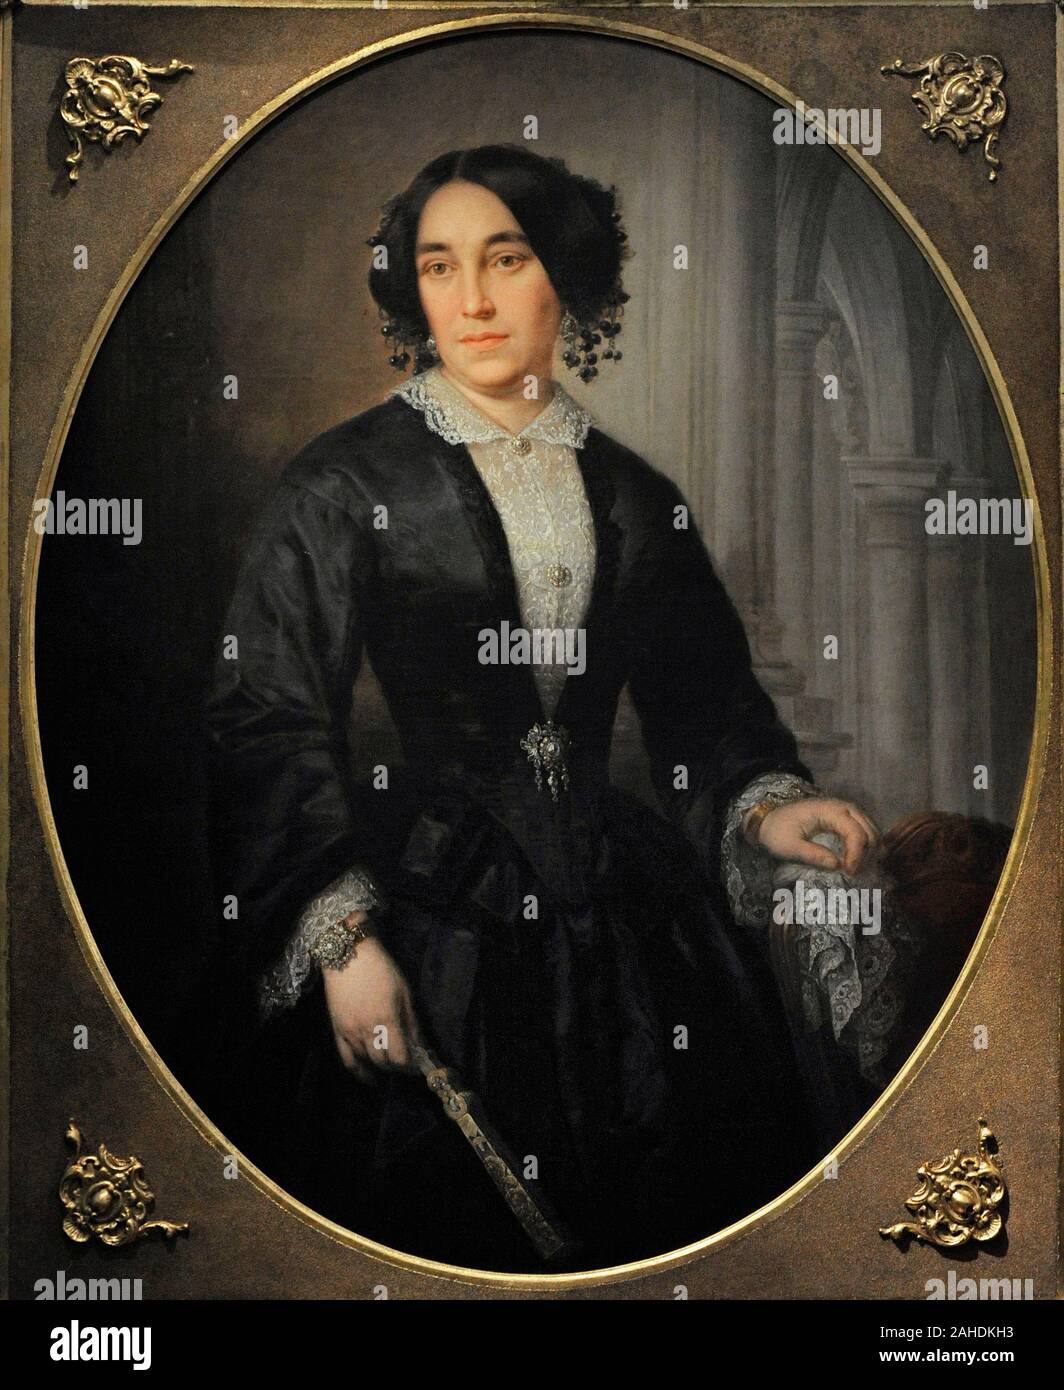 Jose Maria Romero Lopez (1816-1894). Peintre espagnol. Portrait de femme, 1853. Musée du Romantisme. Madrid. L'Espagne. Banque D'Images